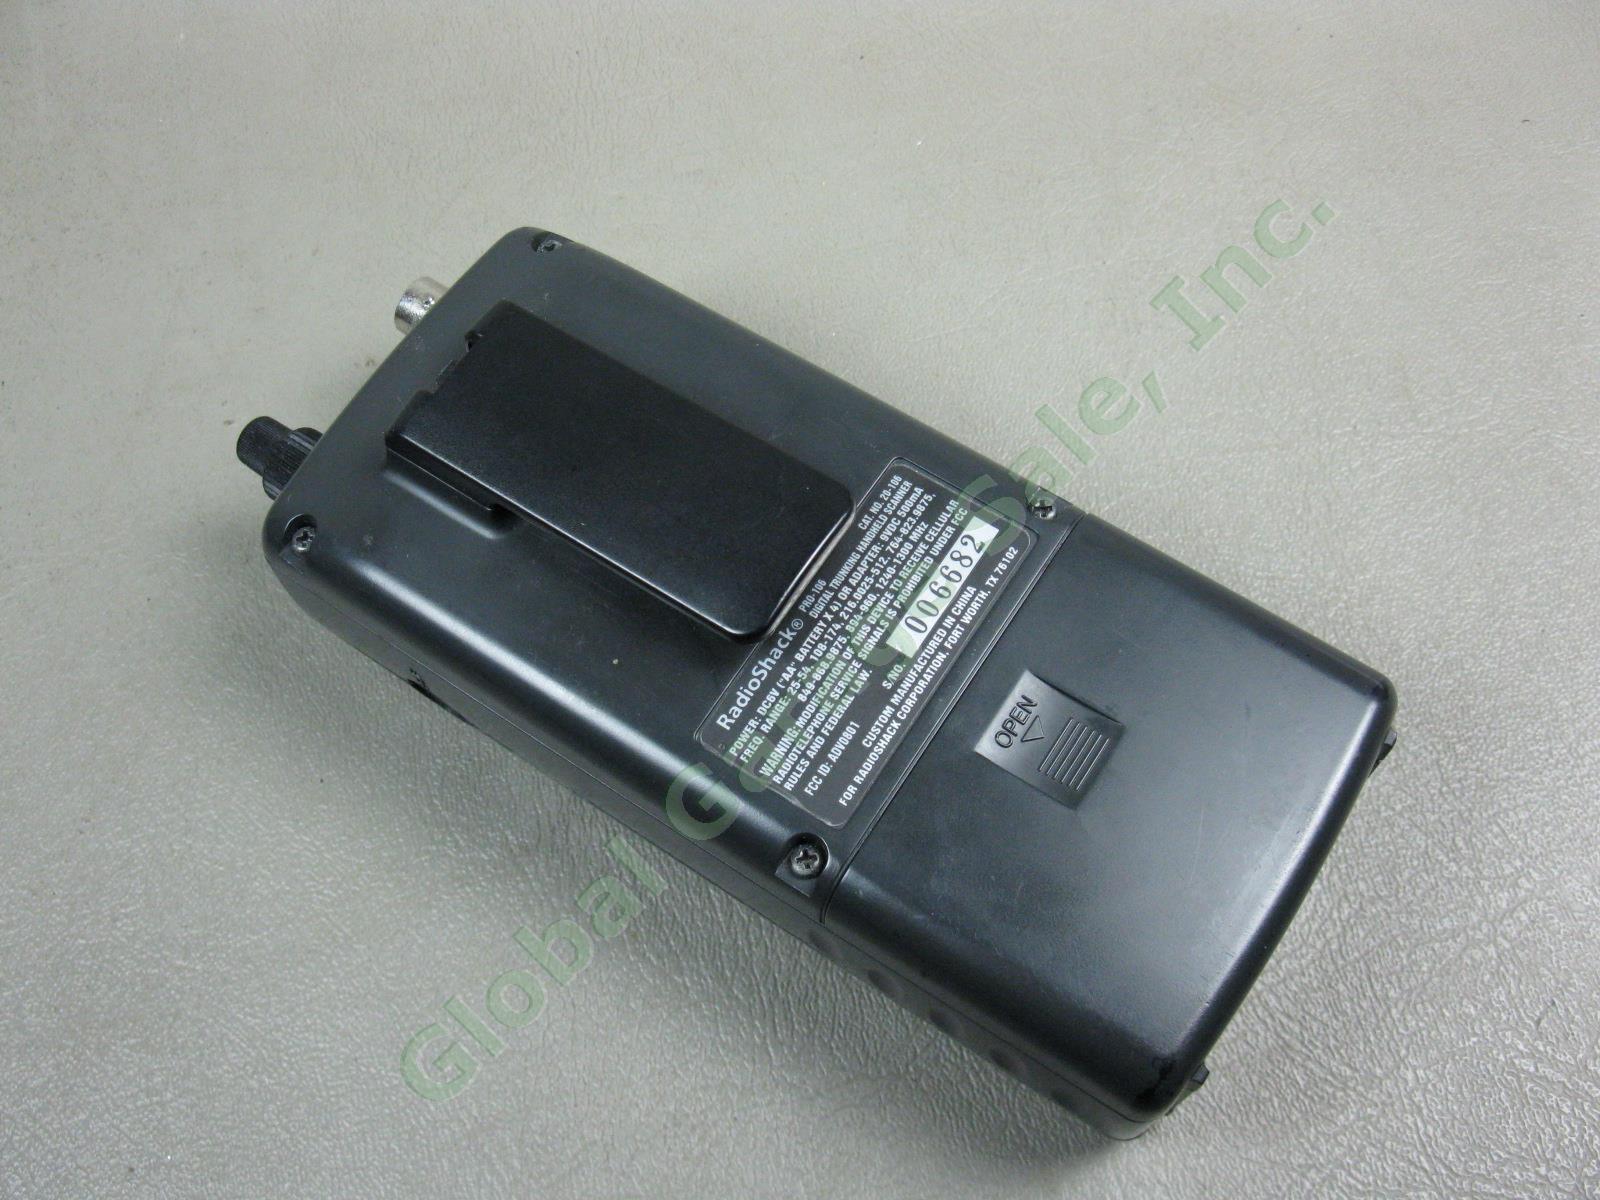 Radio Shack PRO 20 106 Digital Trunking Handheld Scanner + Antenna Manual Bundle 5